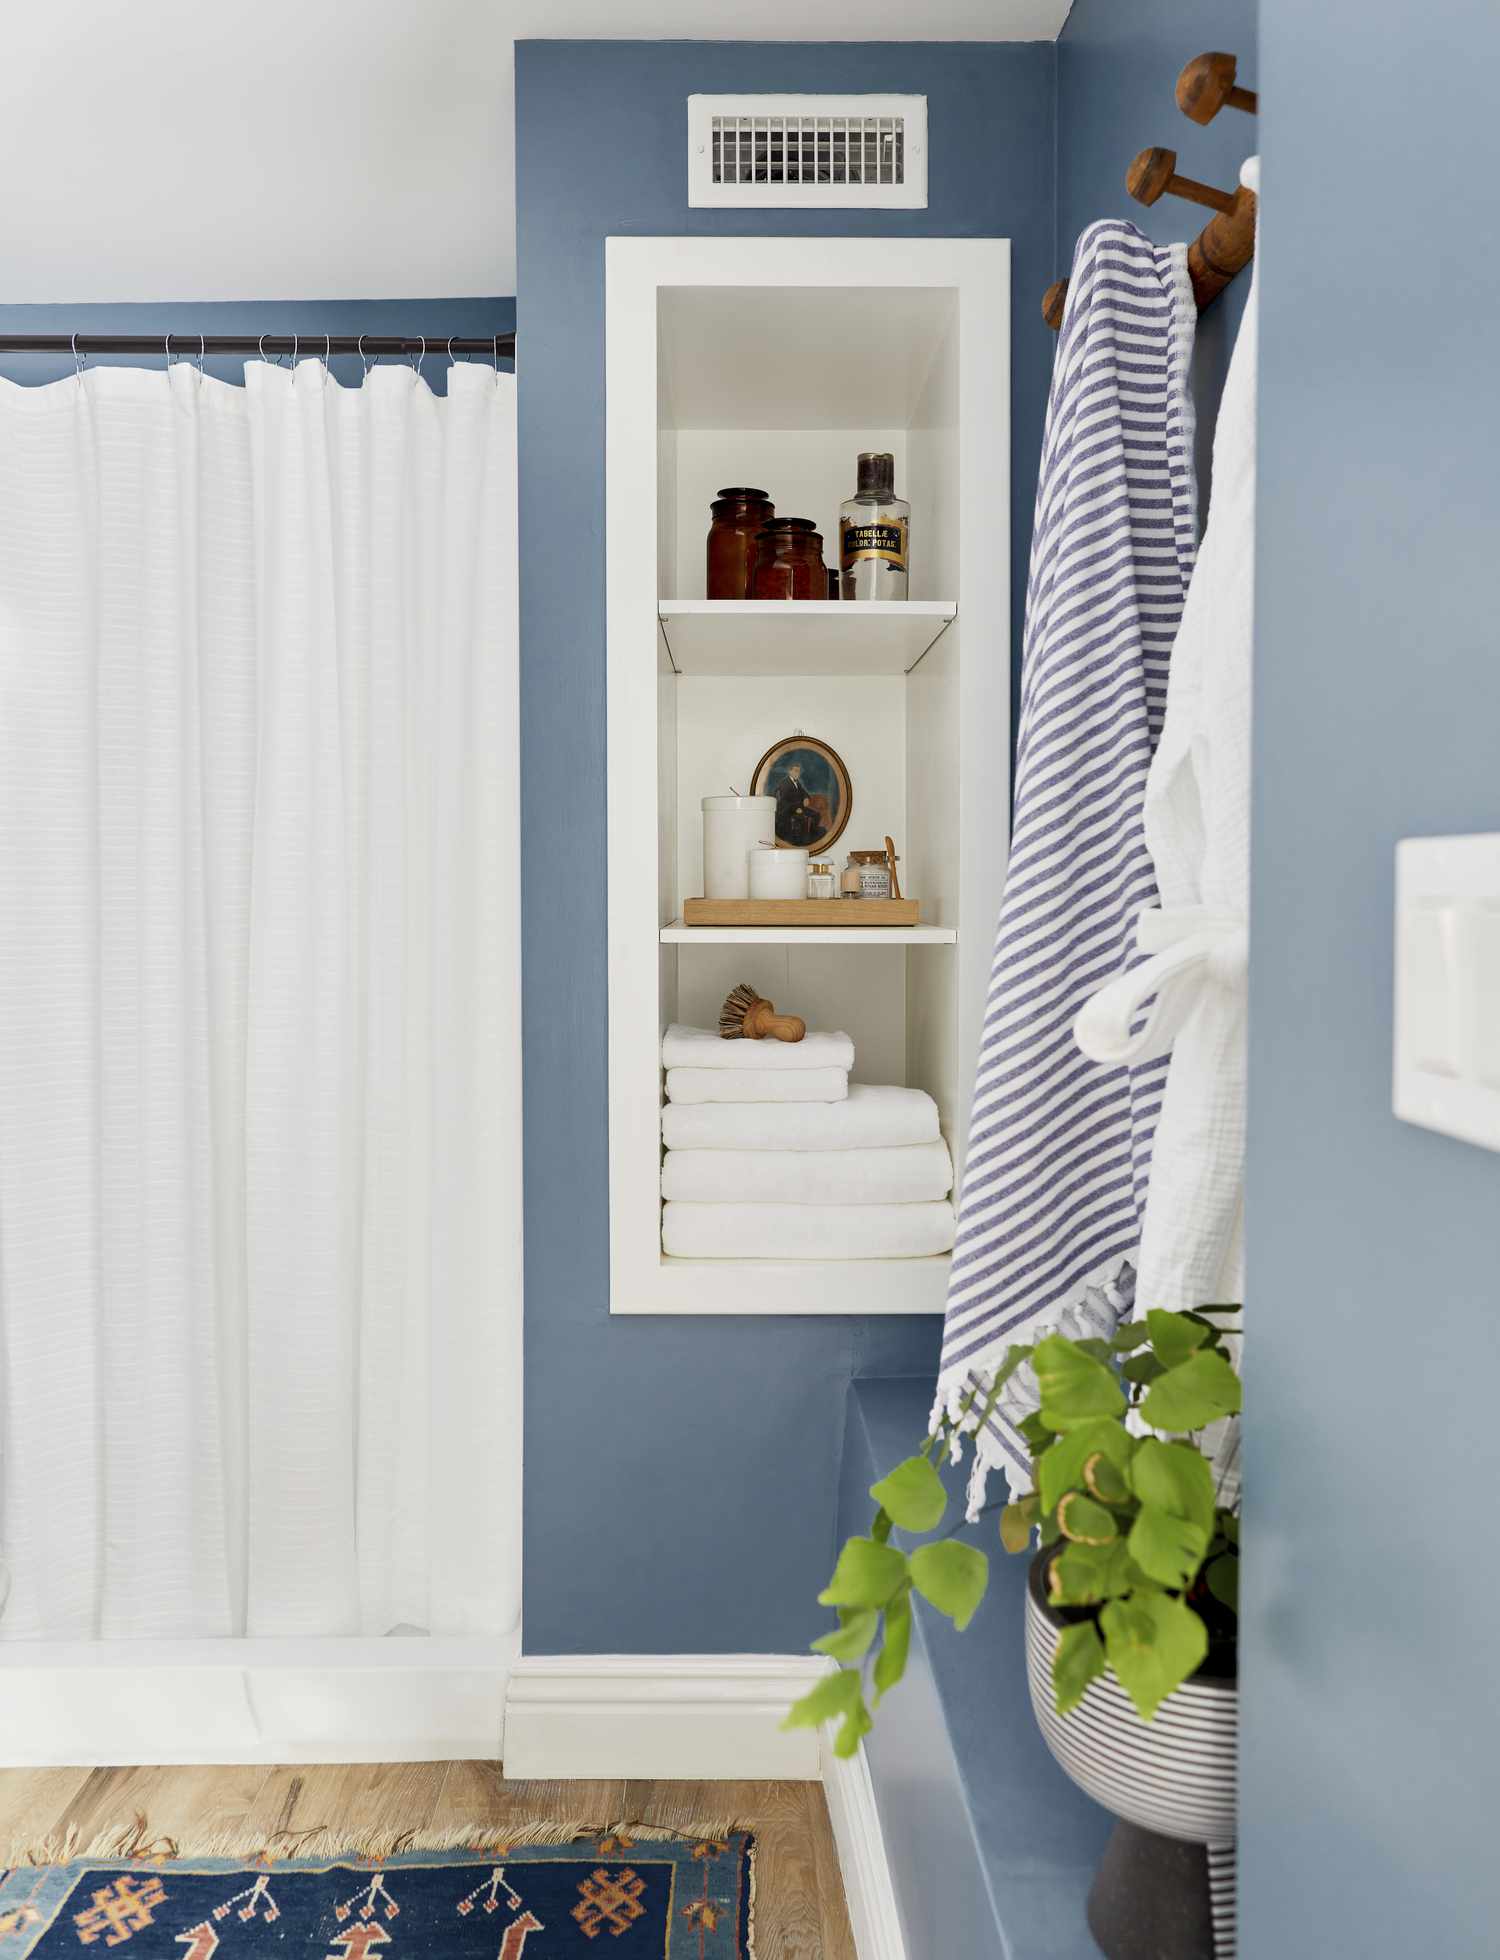 Un baño pintado de un suave tono azul tiene una cortina de ducha blanca